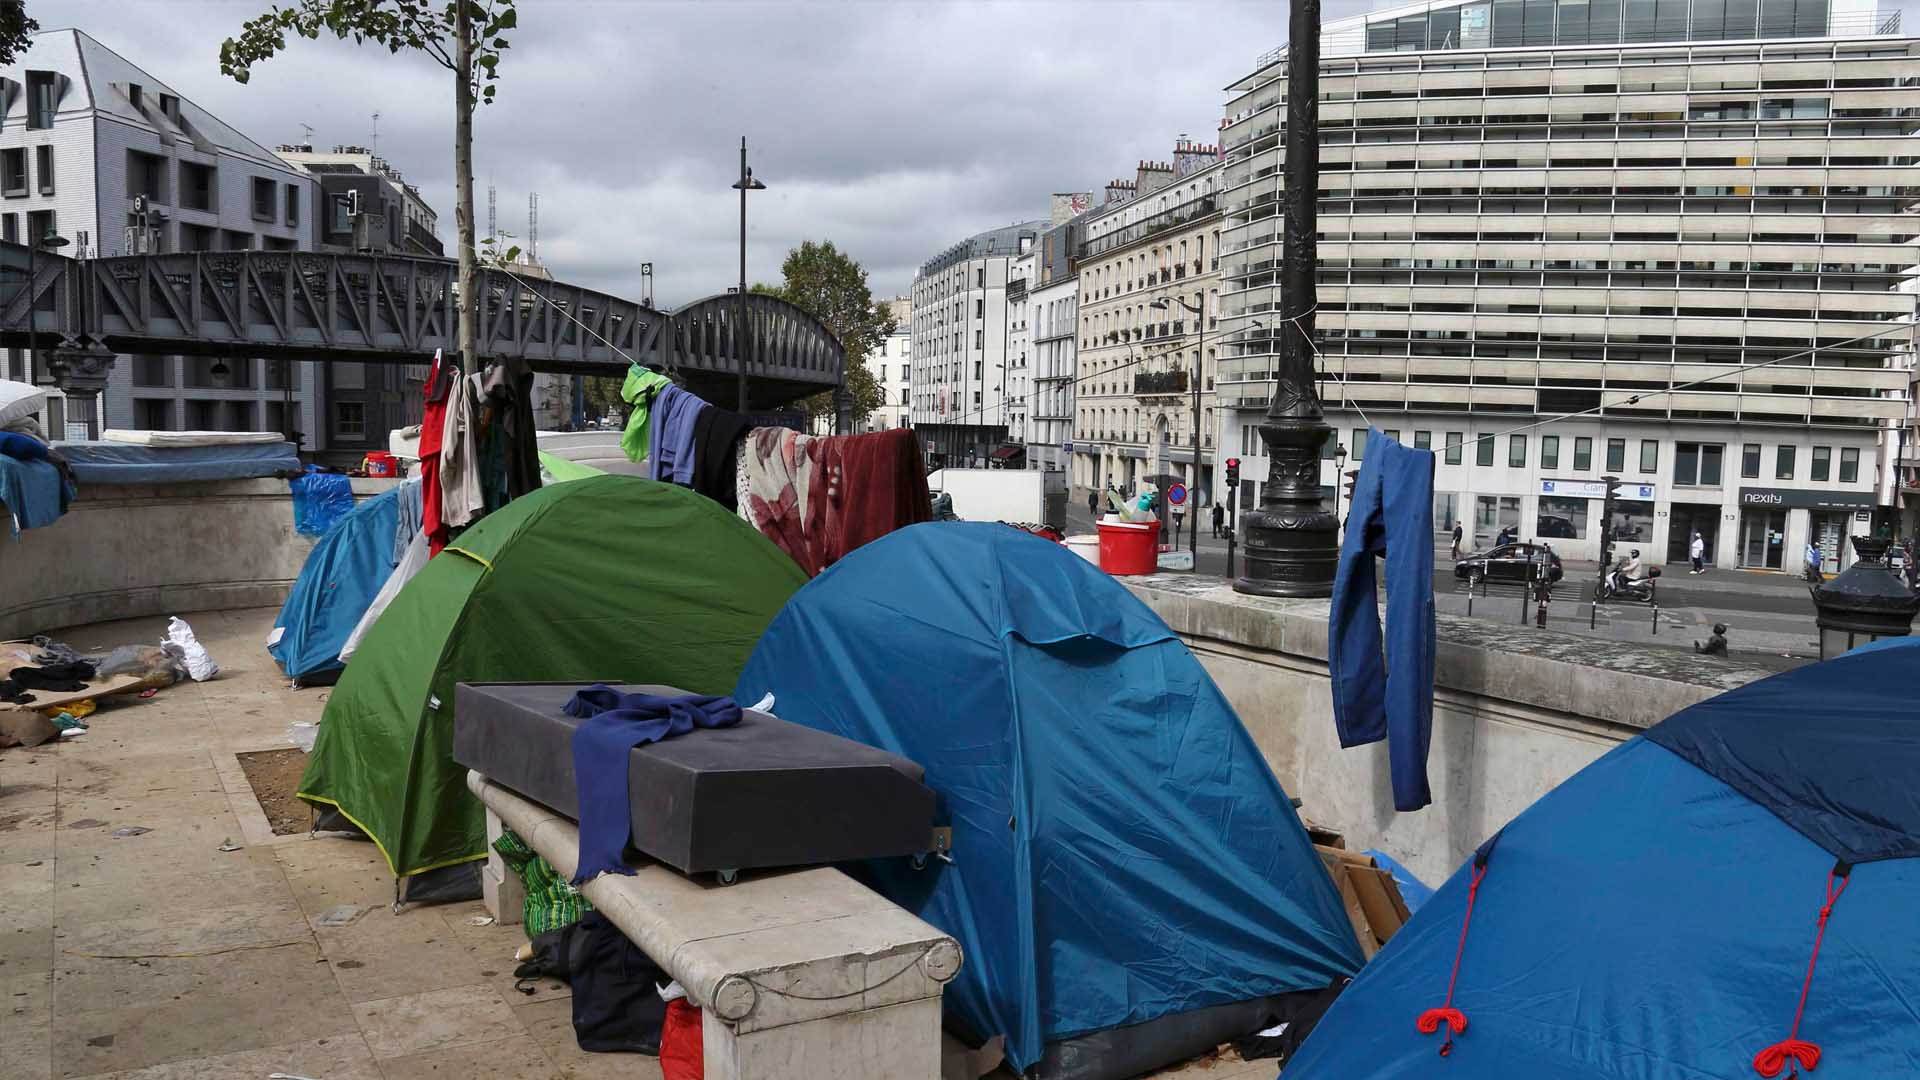 En la ciudad capital se abriran dos centros de acogidas para estas personas con el fin de desalojar el campamento de Calais